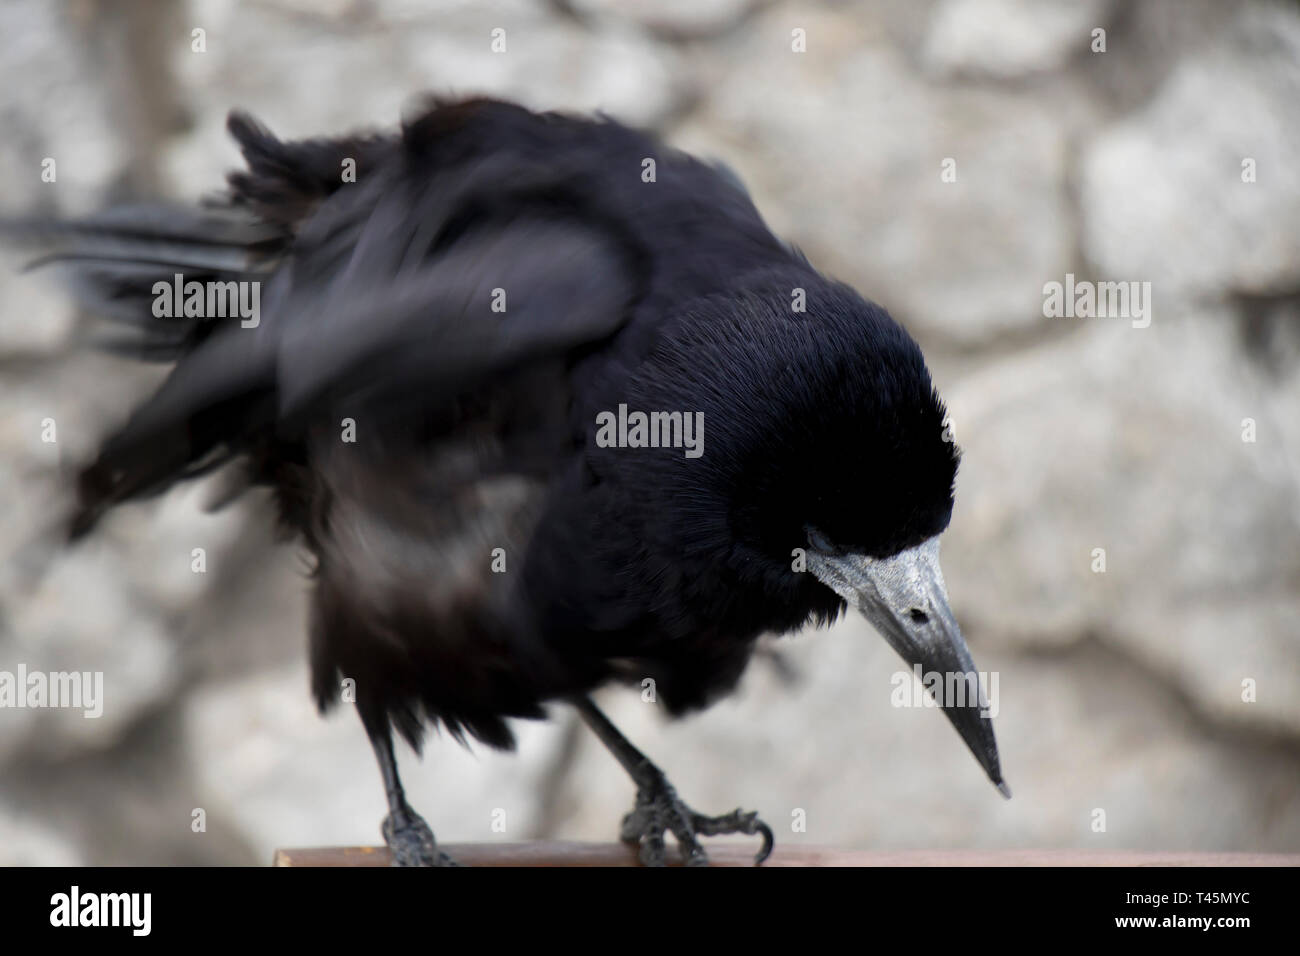 Vieux corbeau ou corneille, oiseau noir ville commun ébouriffant, des plumes dans le motion blur Banque D'Images